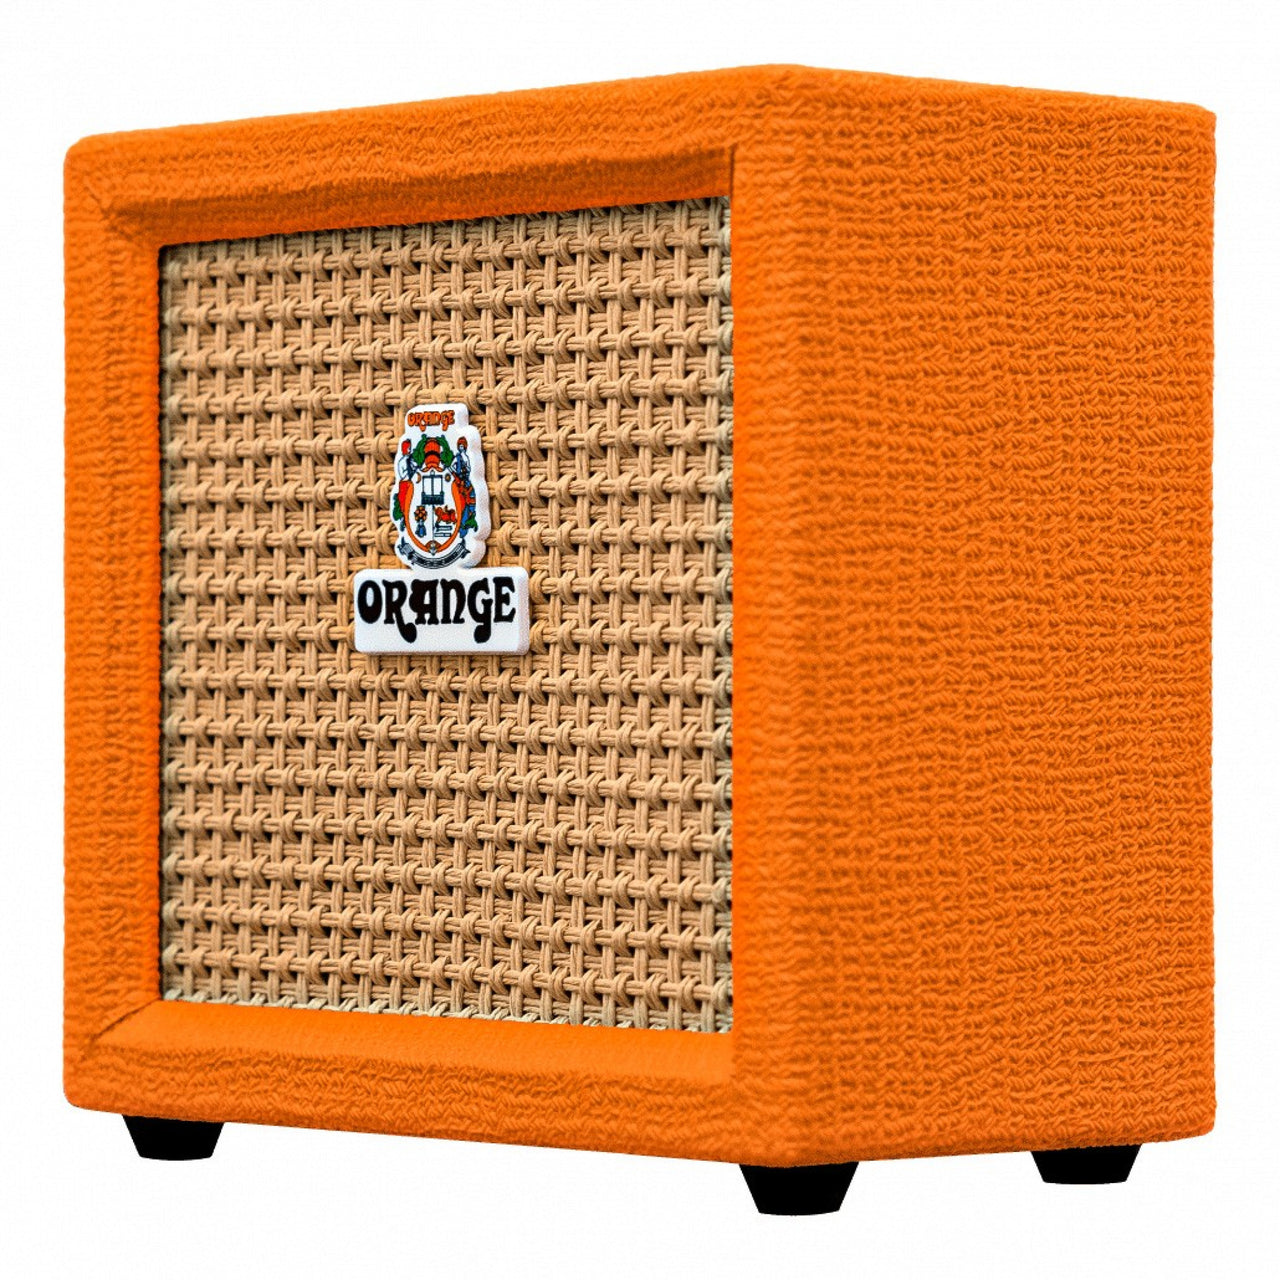 Amplificador Orange Crush Mini Para Guitarra 3w